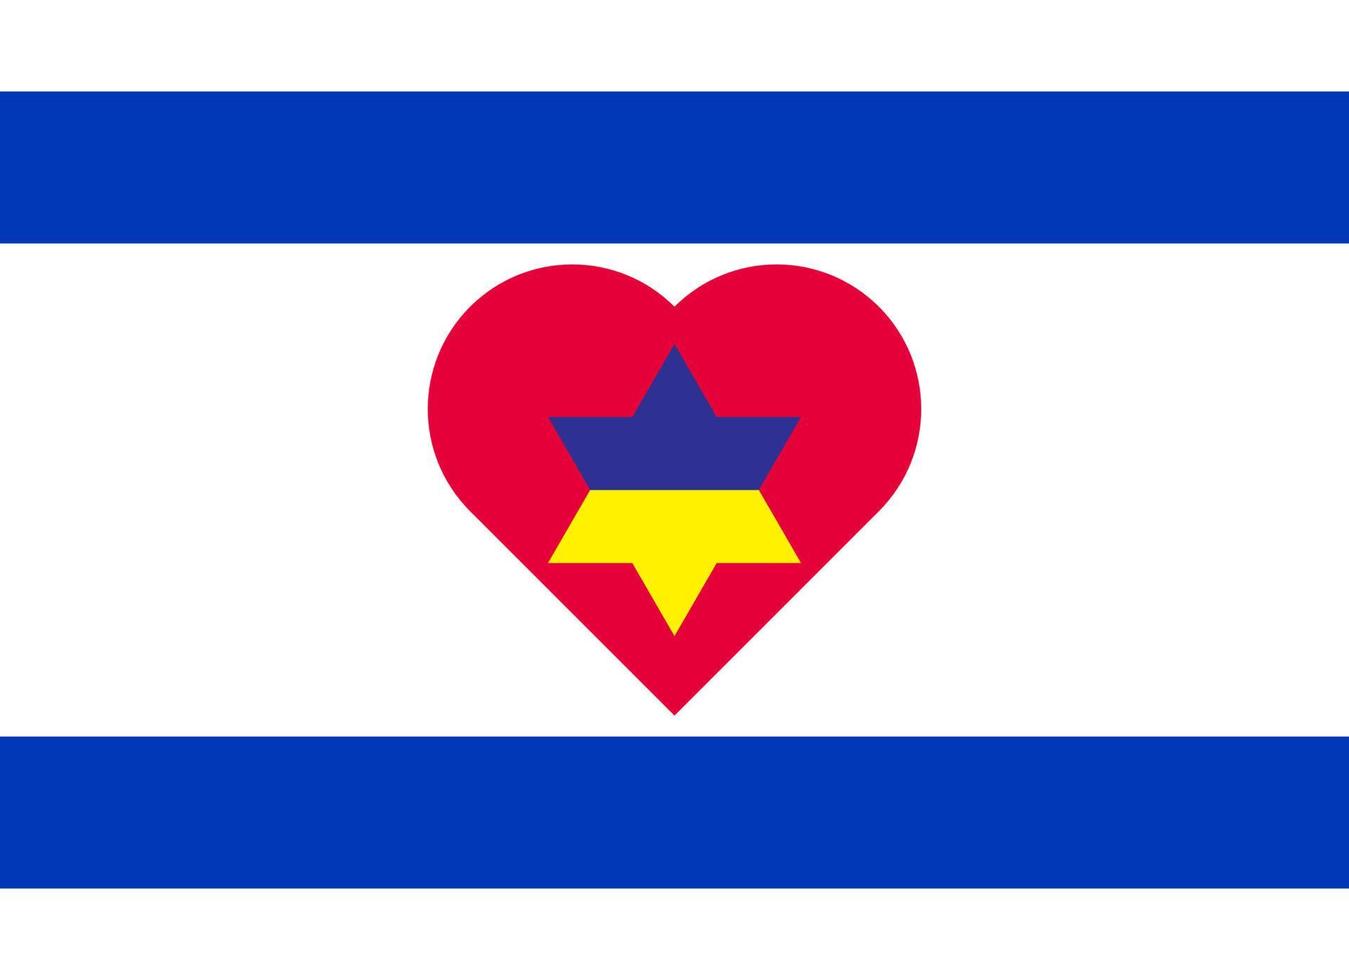 un corazón pintado con los colores de la bandera de ucrania en la bandera de israel. ilustración vectorial de un corazón azul y amarillo en el símbolo nacional. vector